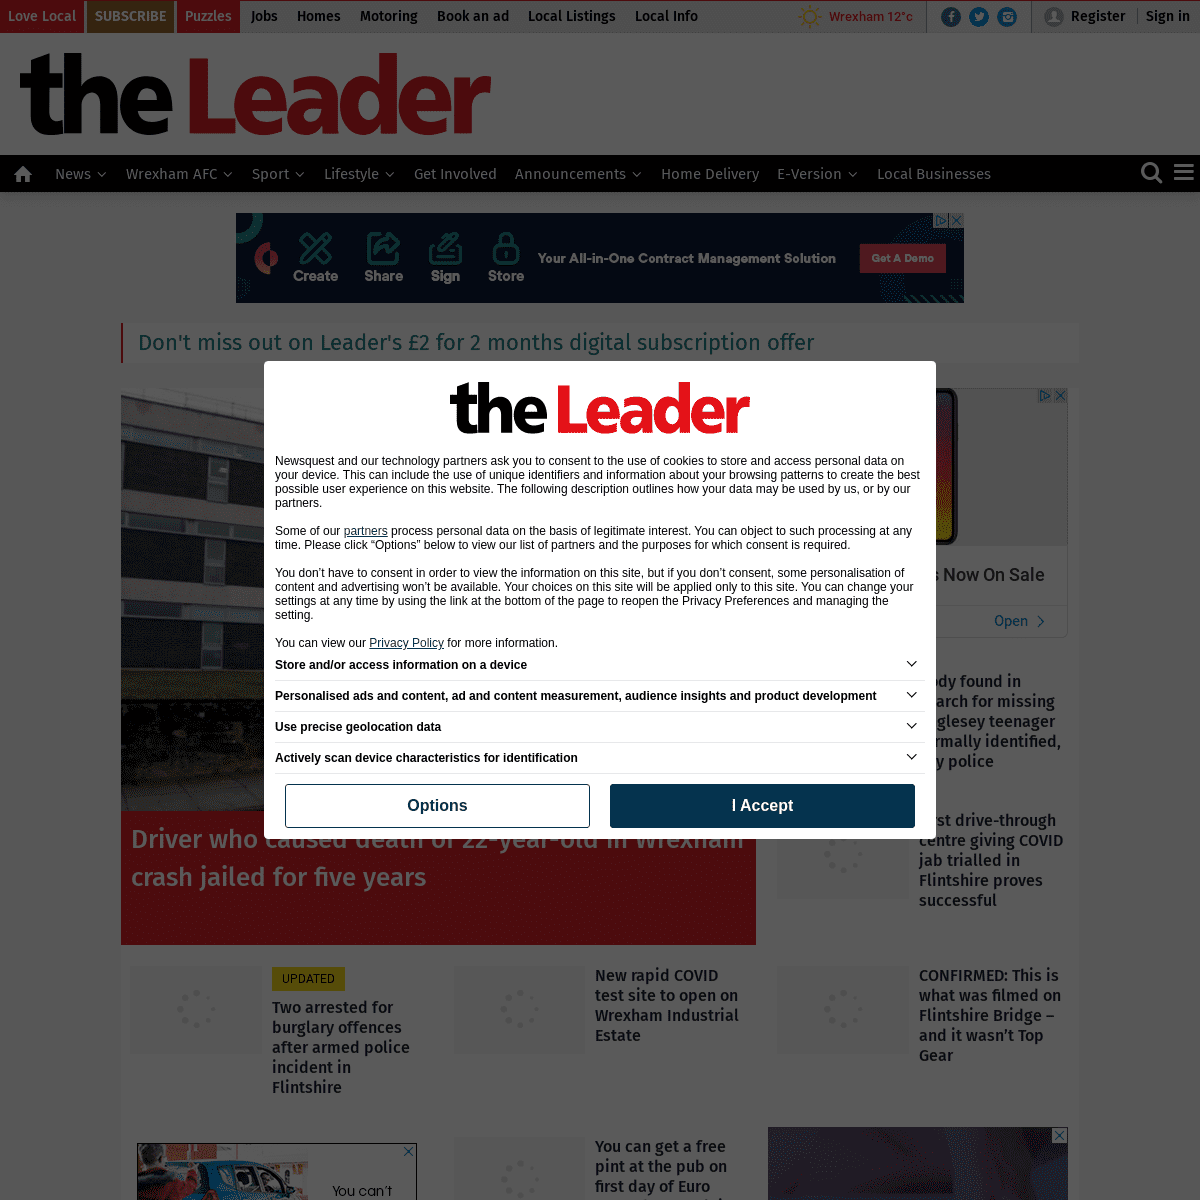 A complete backup of https://leaderlive.co.uk